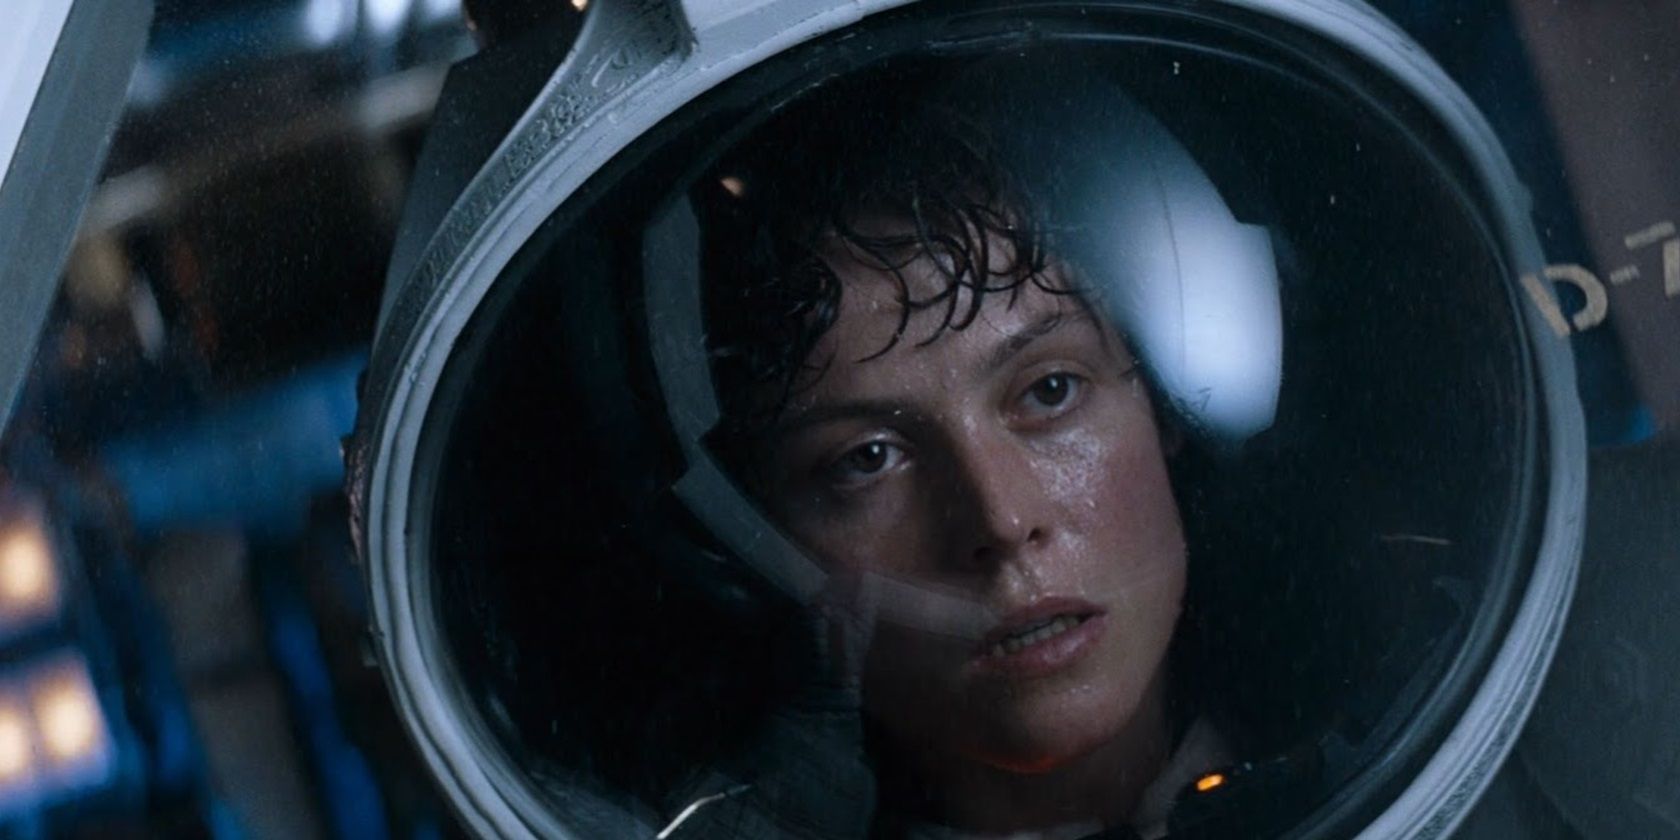 Ripley in a space suit in Alien